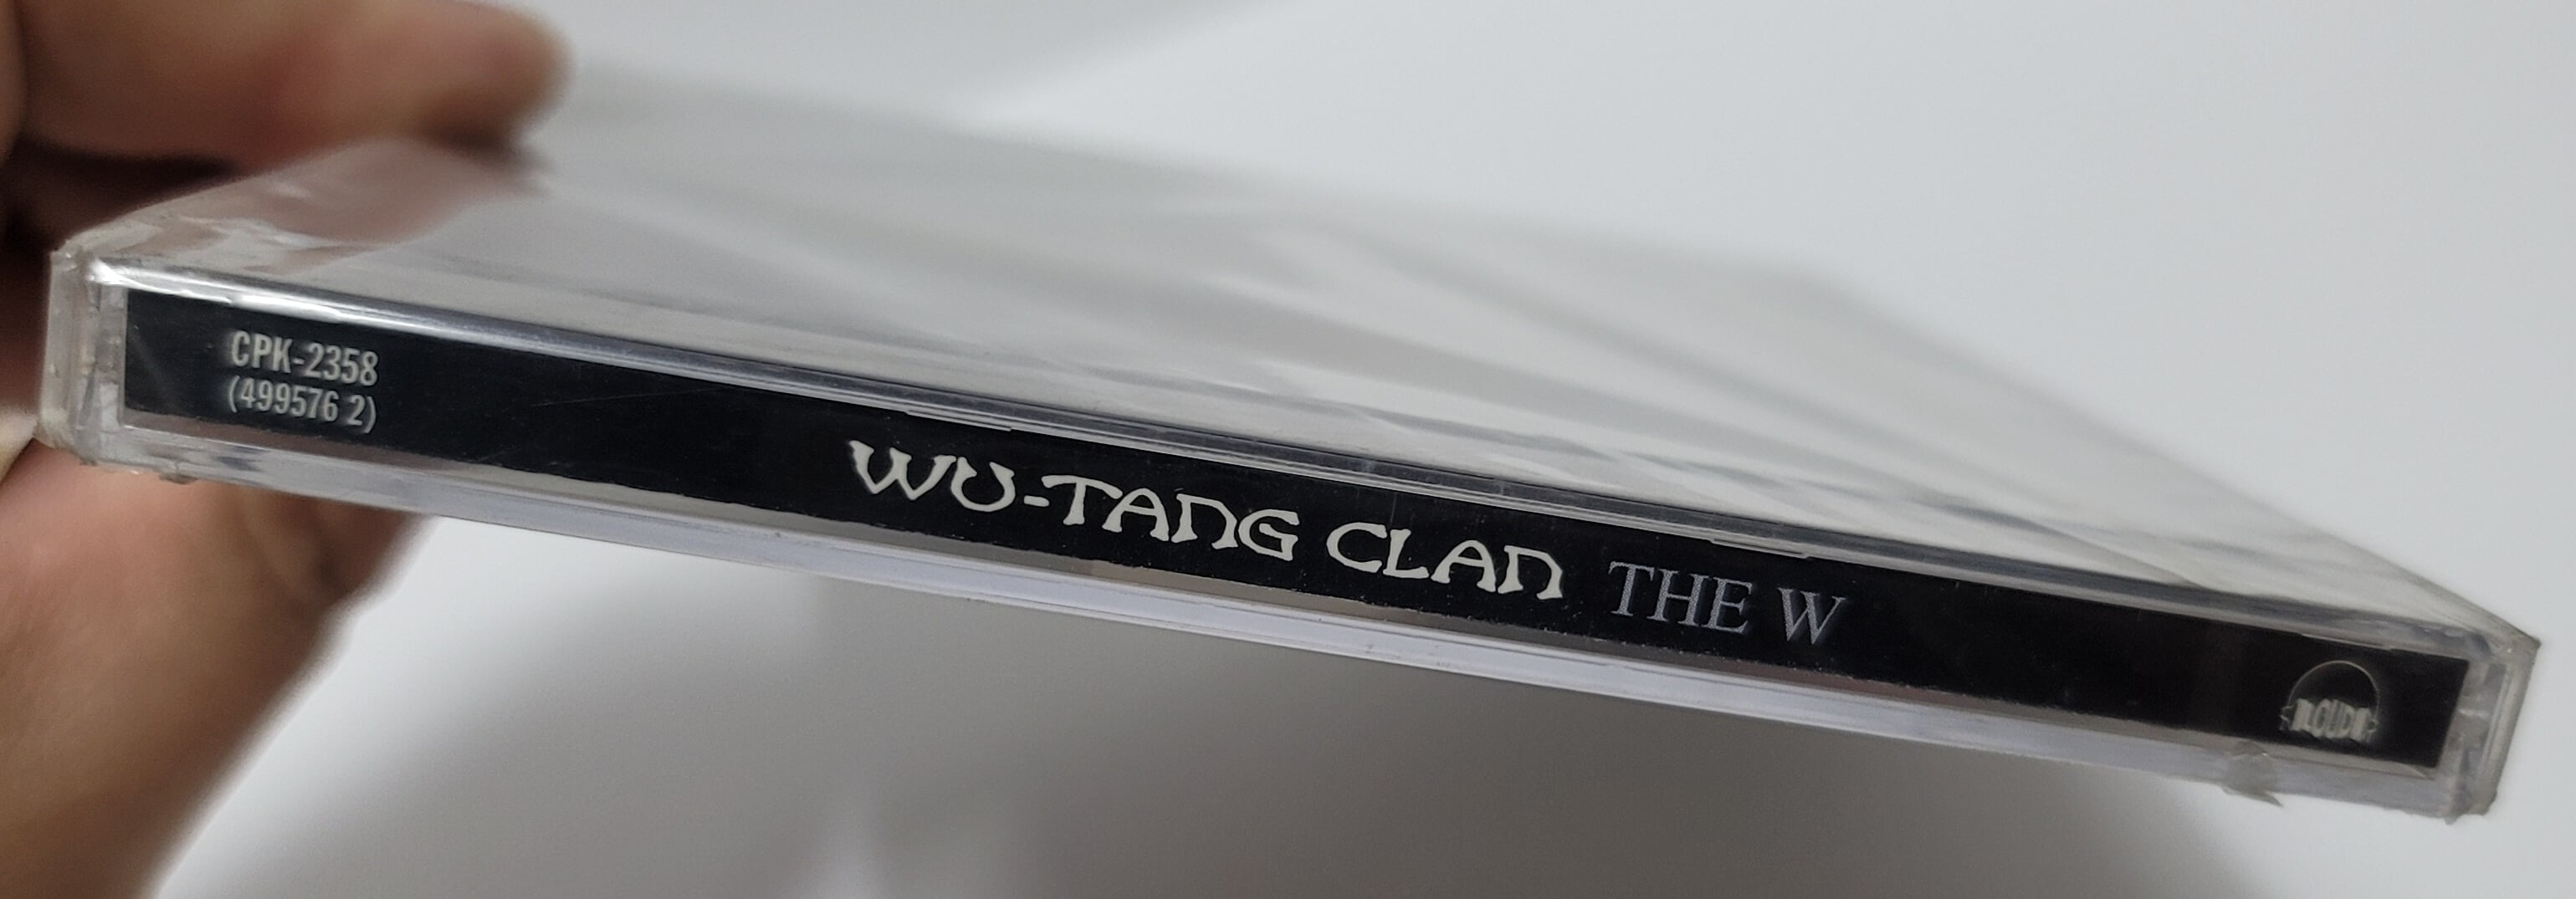 (미개봉) Wu-Tang Clan - THE W